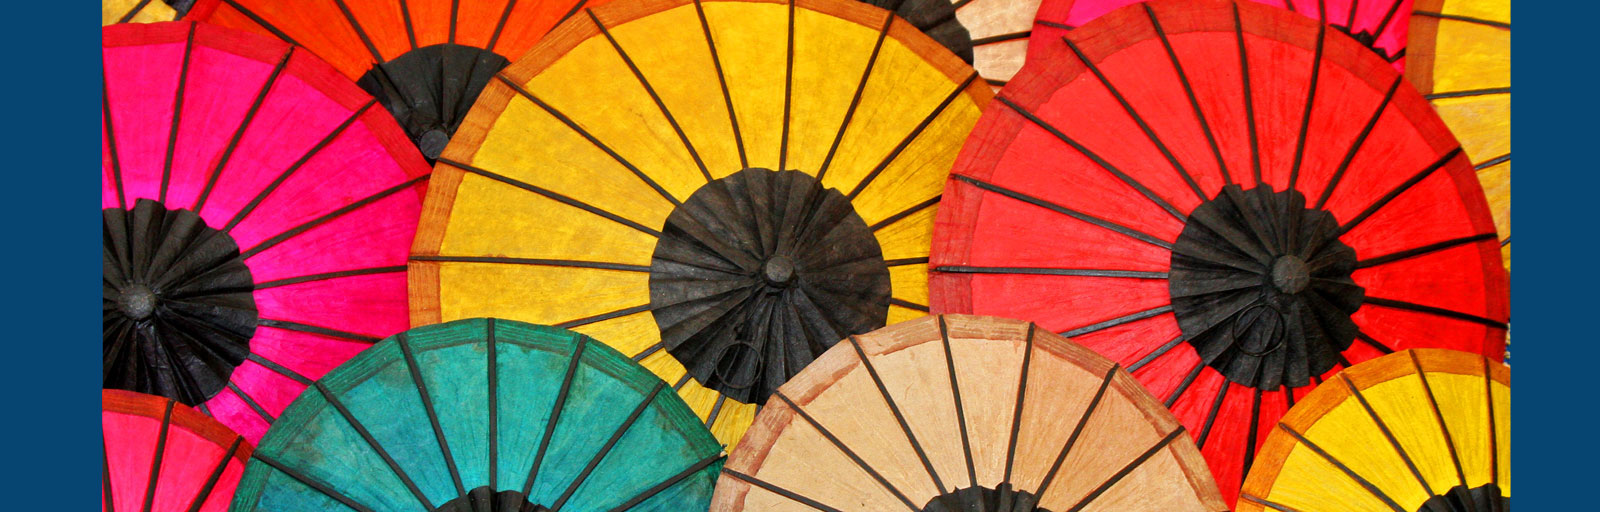 Bannerbild zeigt verschieden farbige Schirme